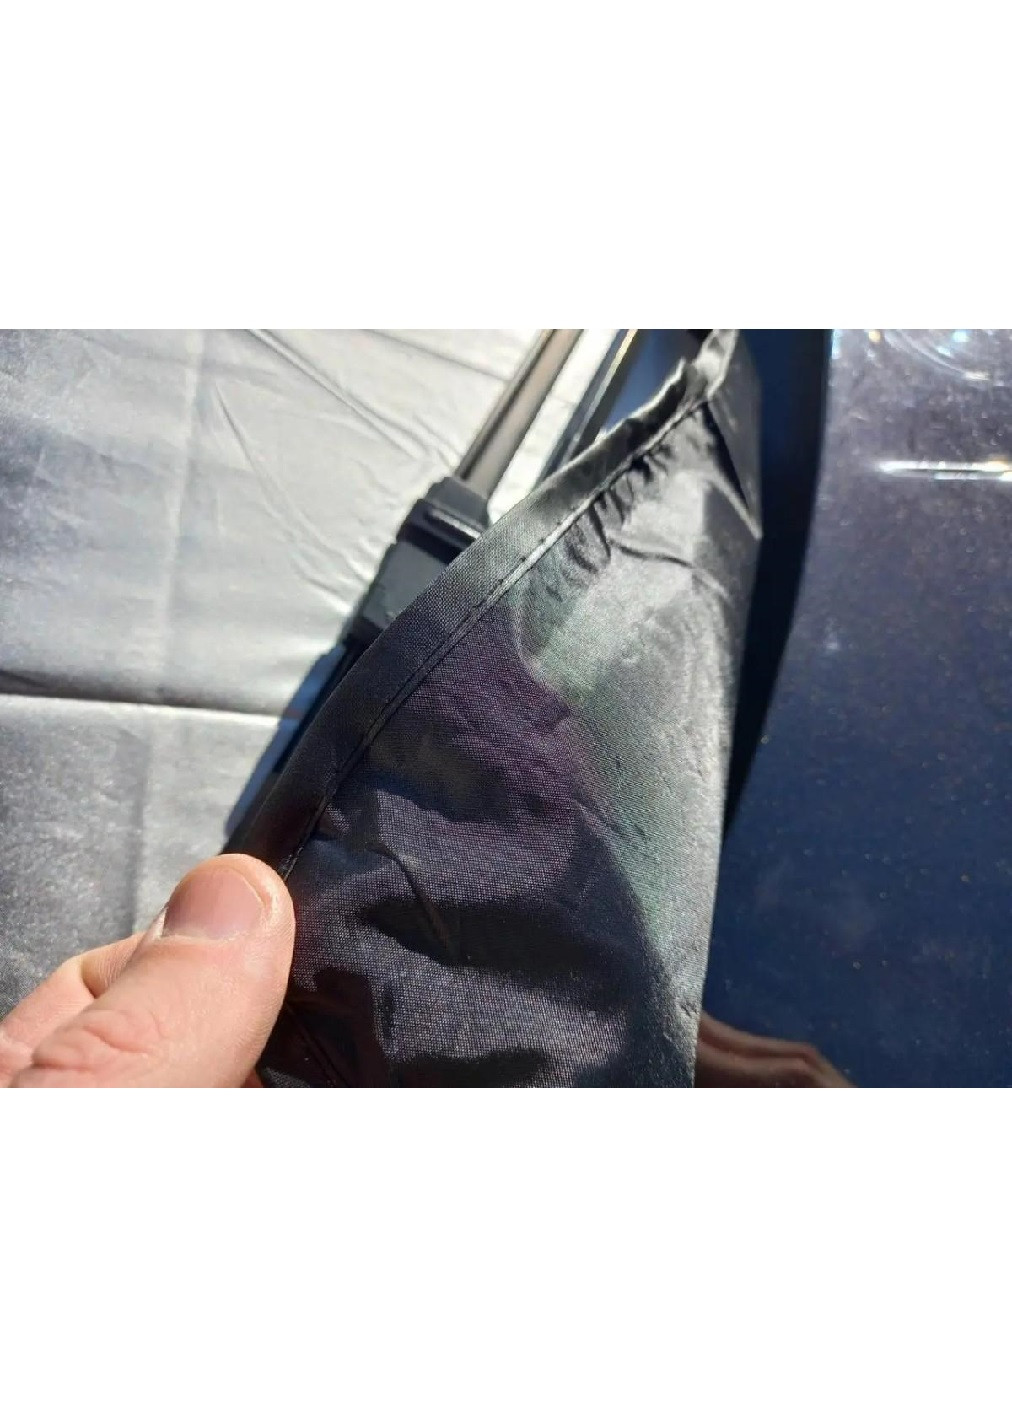 Чохол накладка накидка захисний екран на лобове скло машини автомобіля з магнітами 110х150 см (475725-Prob) Сіра Unbranded (270827884)